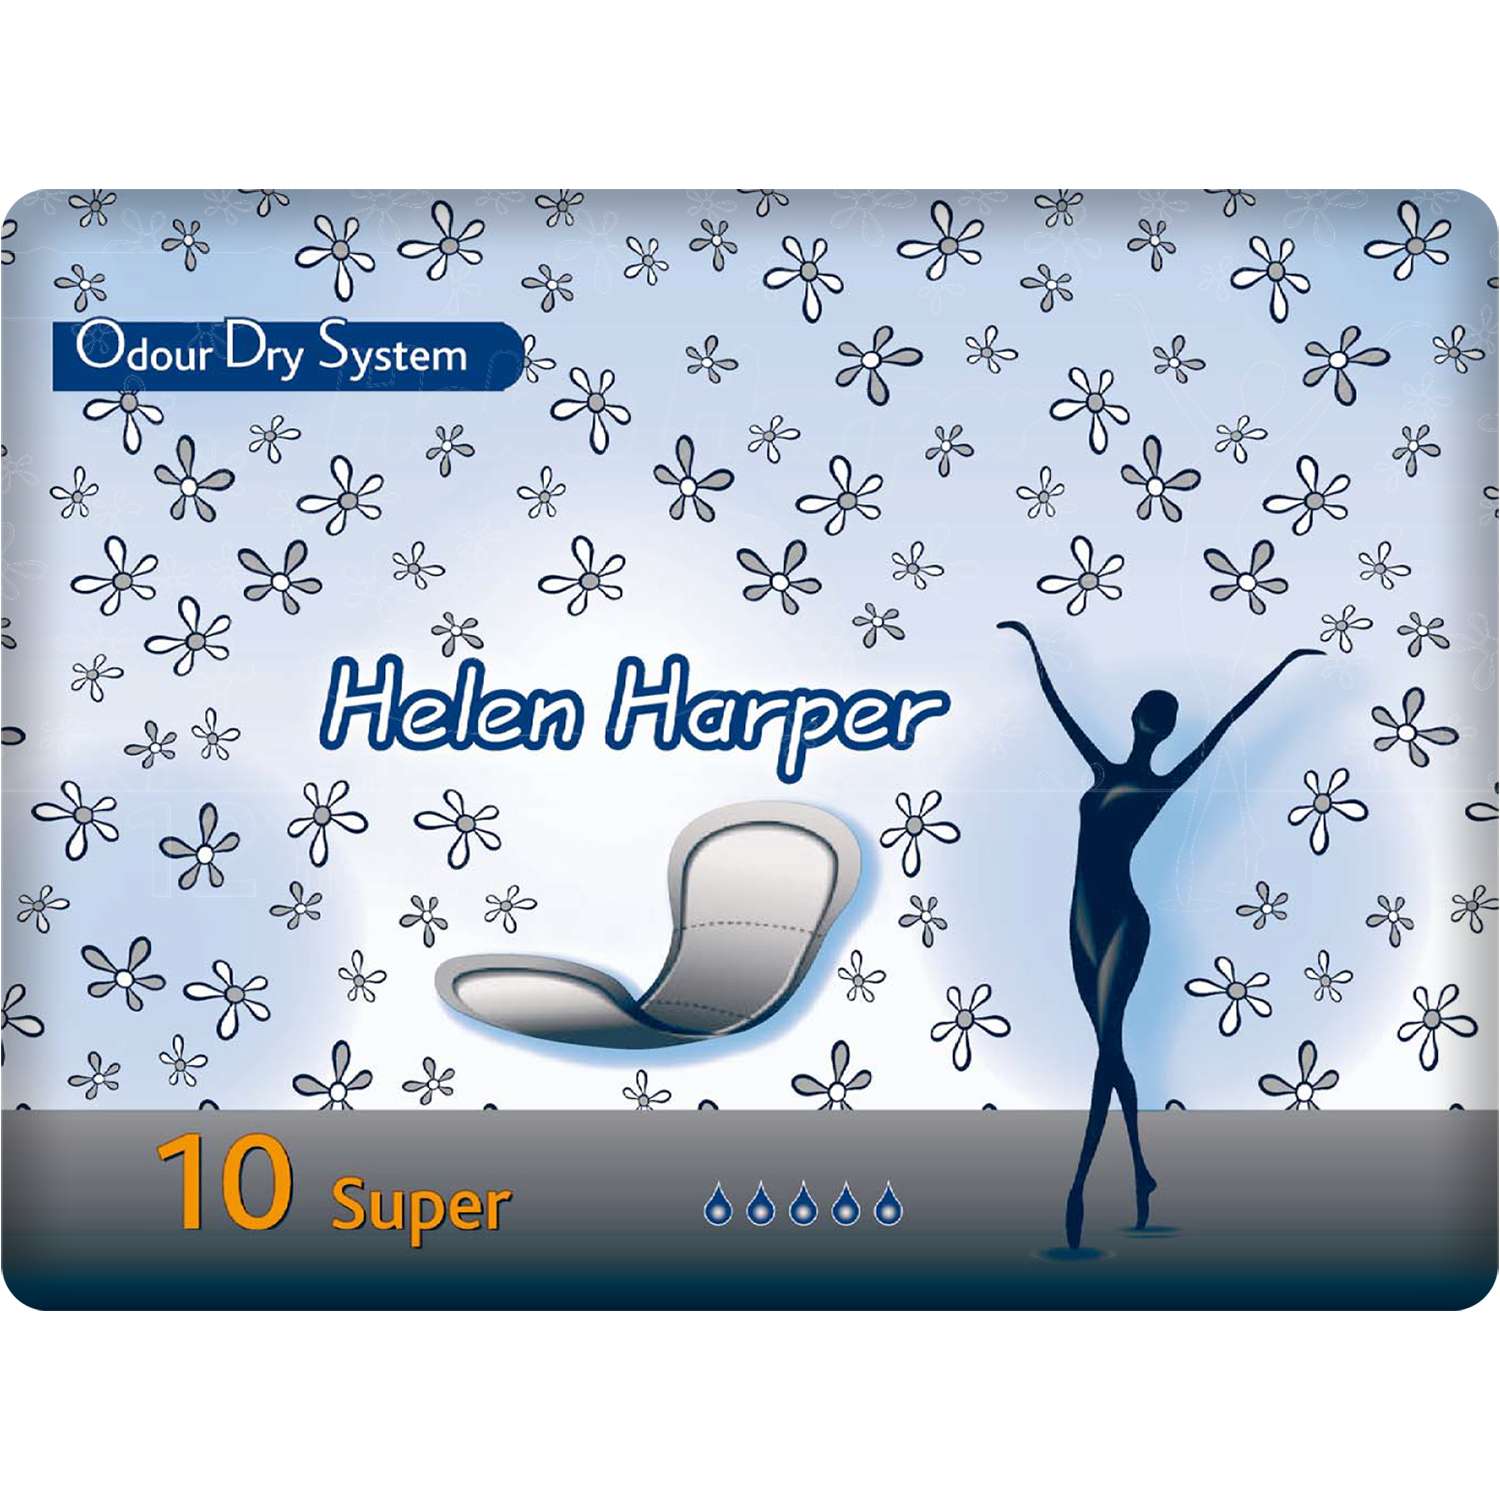 Прокладки послеродовые Helen Harper Odour Dry System Super № 10 - фото 1